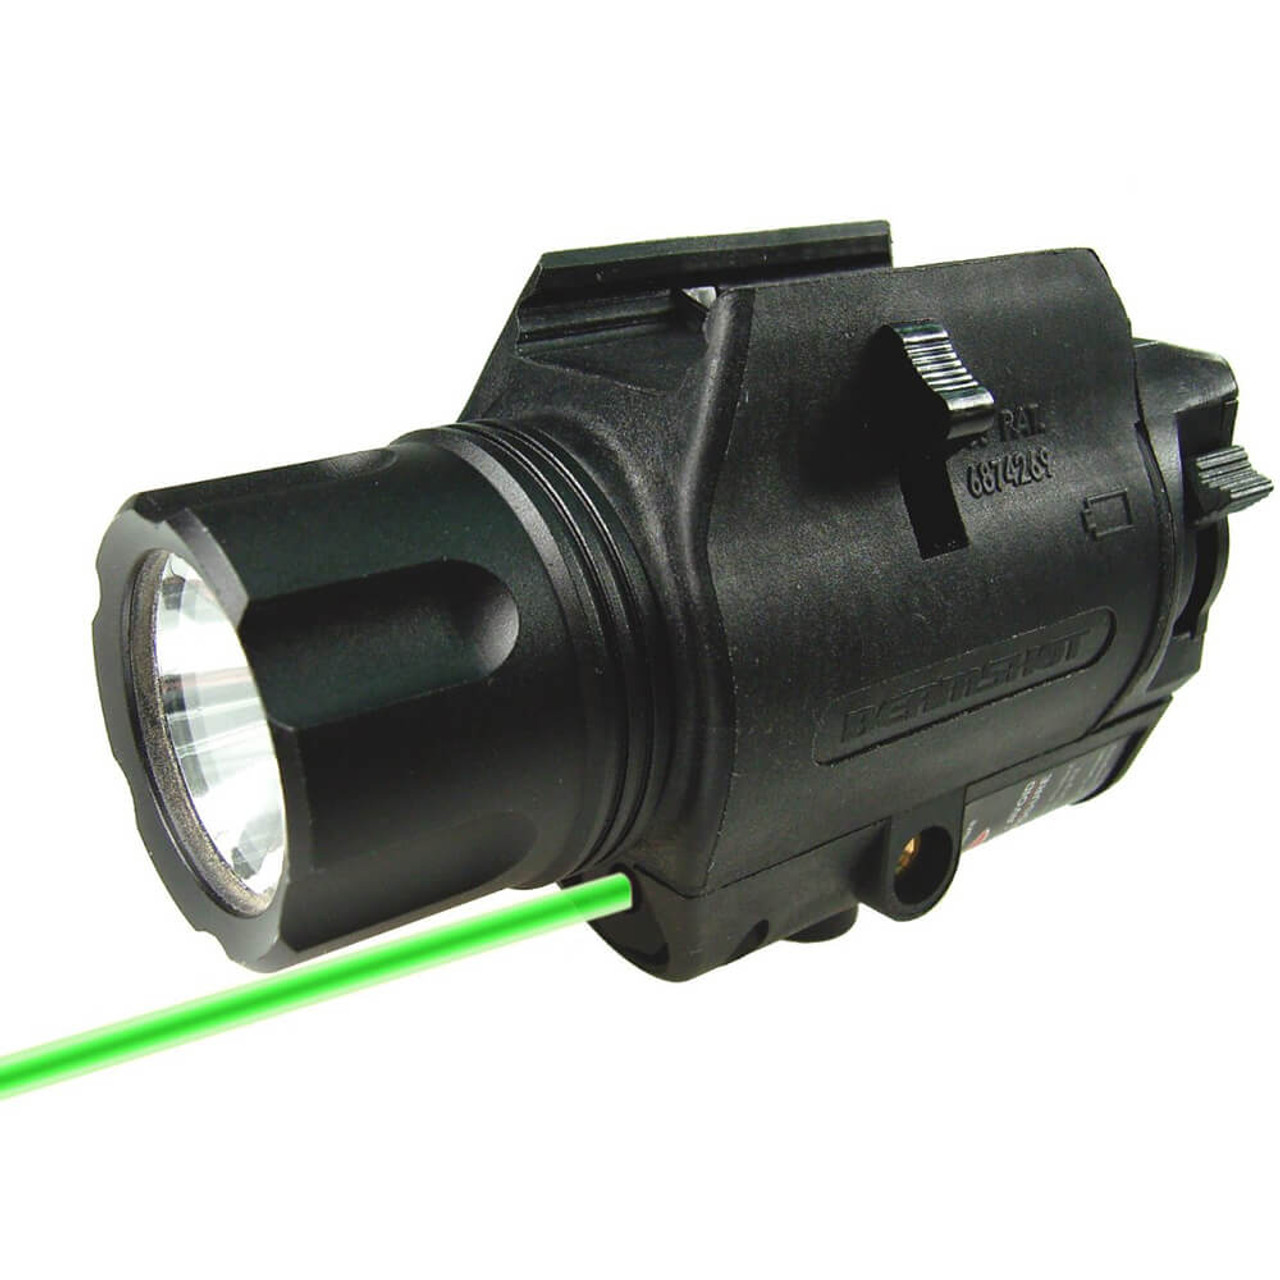 green laser light combo